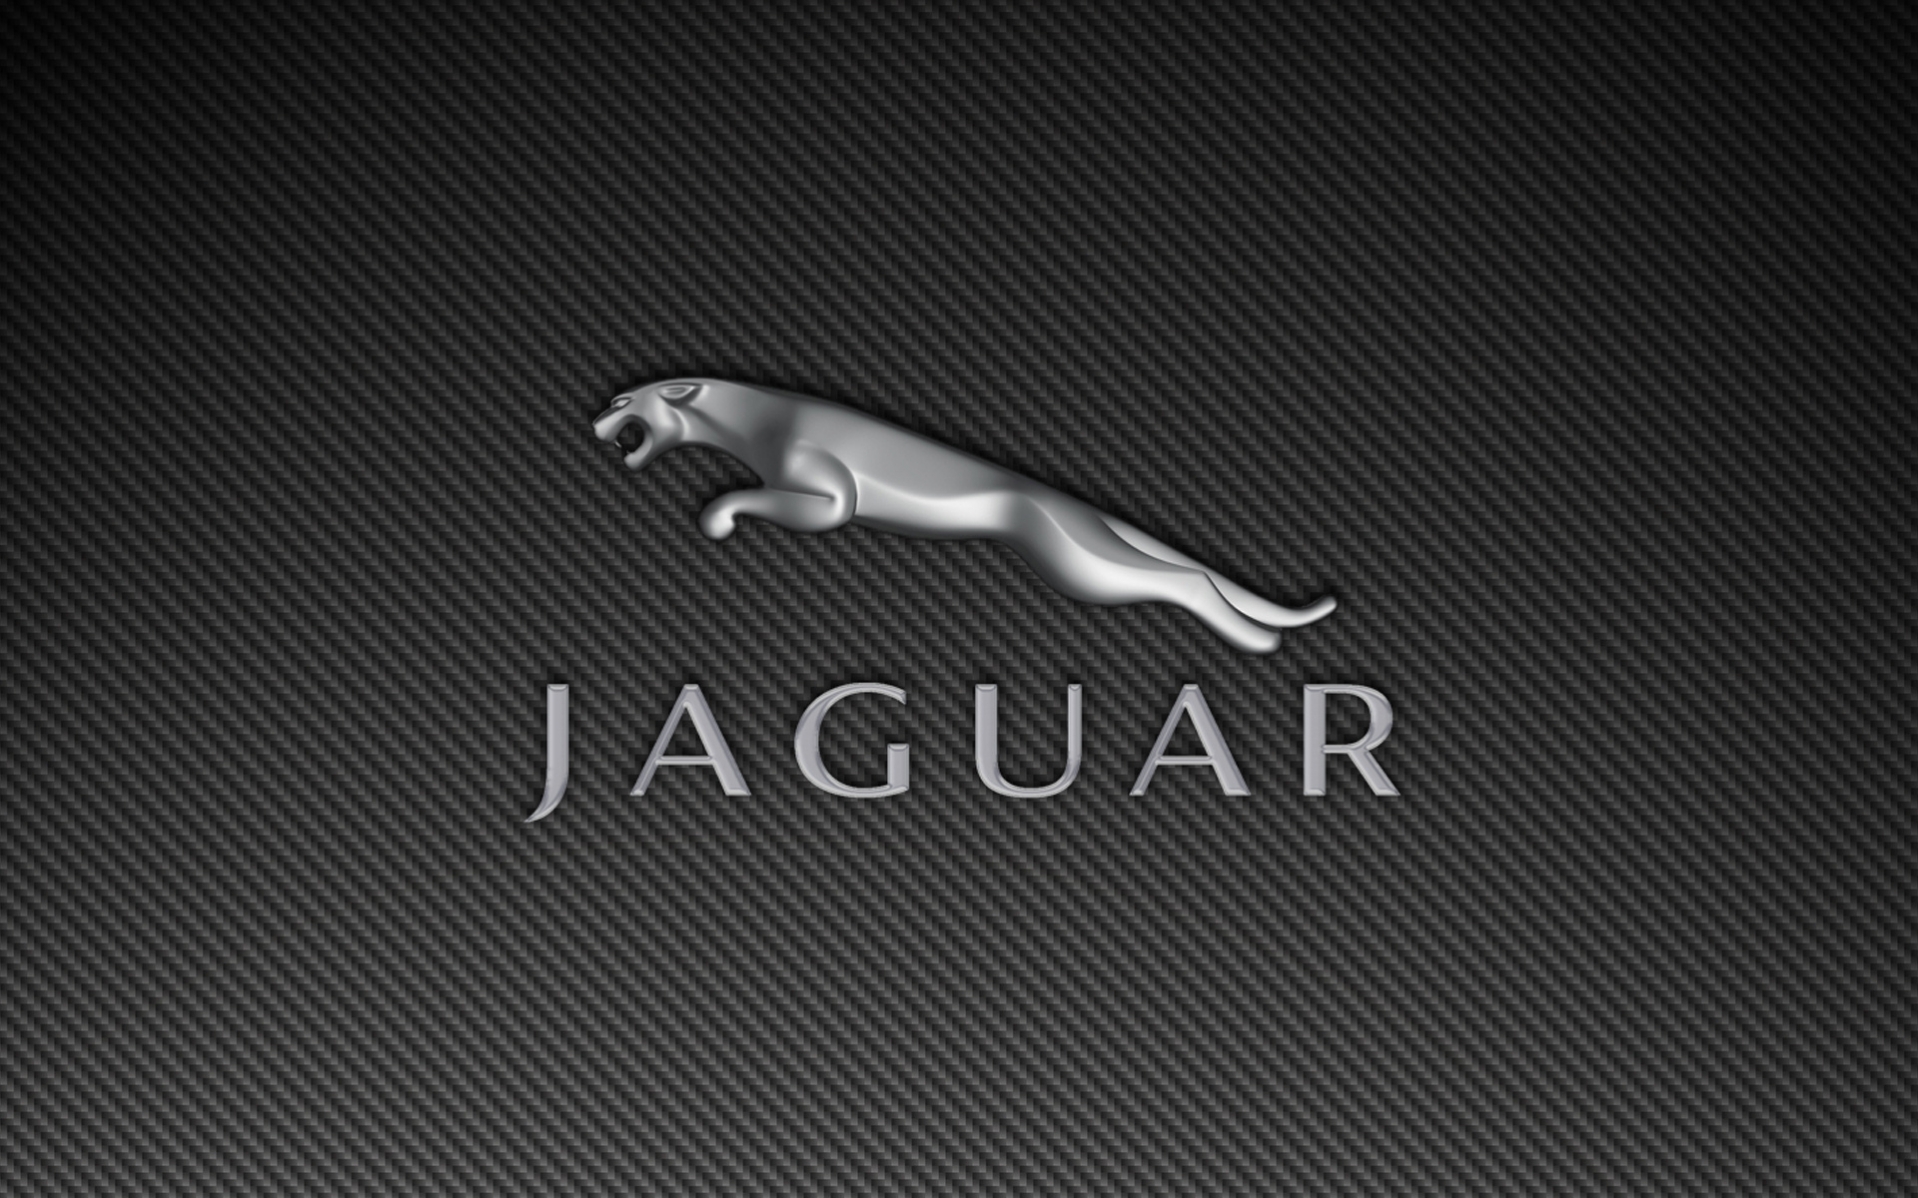 Free Jaguar, By Rivka Enterline, Px - 1918x1198 Wallpaper - teahub.io